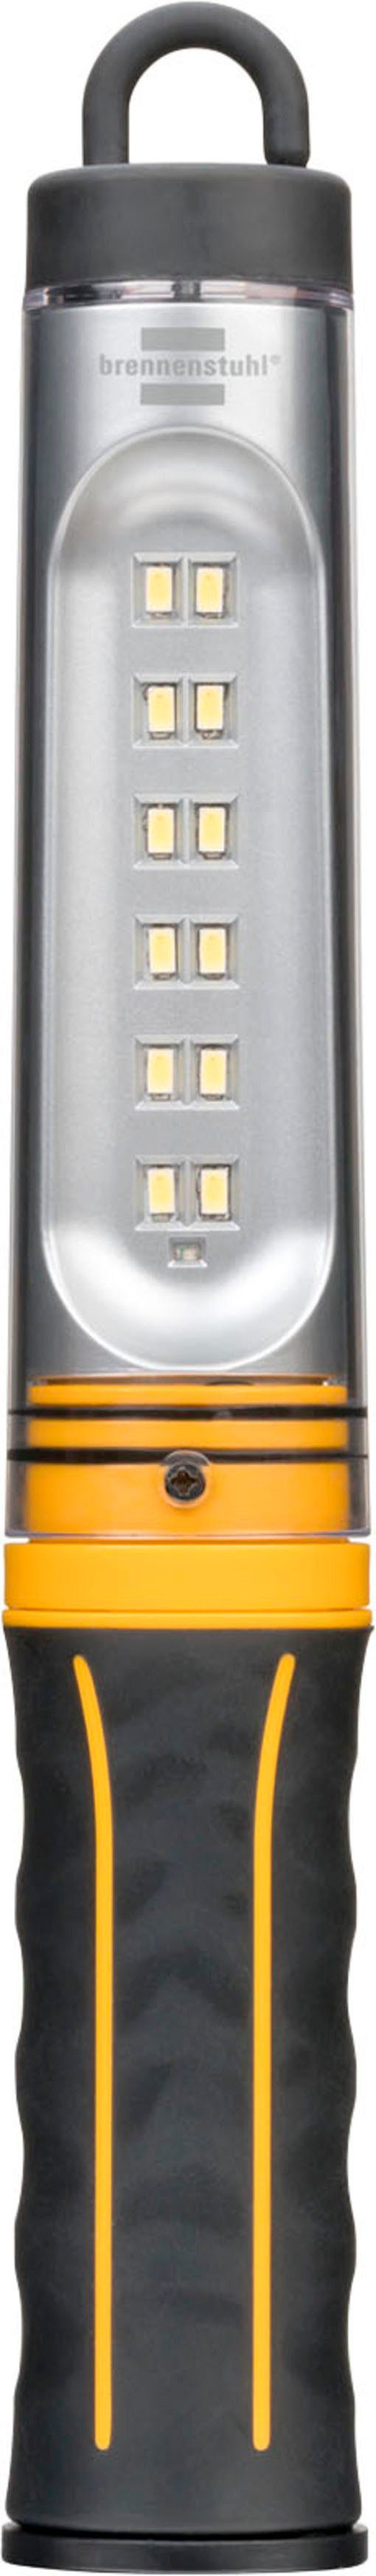 Brennenstuhl Handleuchte WL 500 A, mit integriertem Akku und USB-Kabel